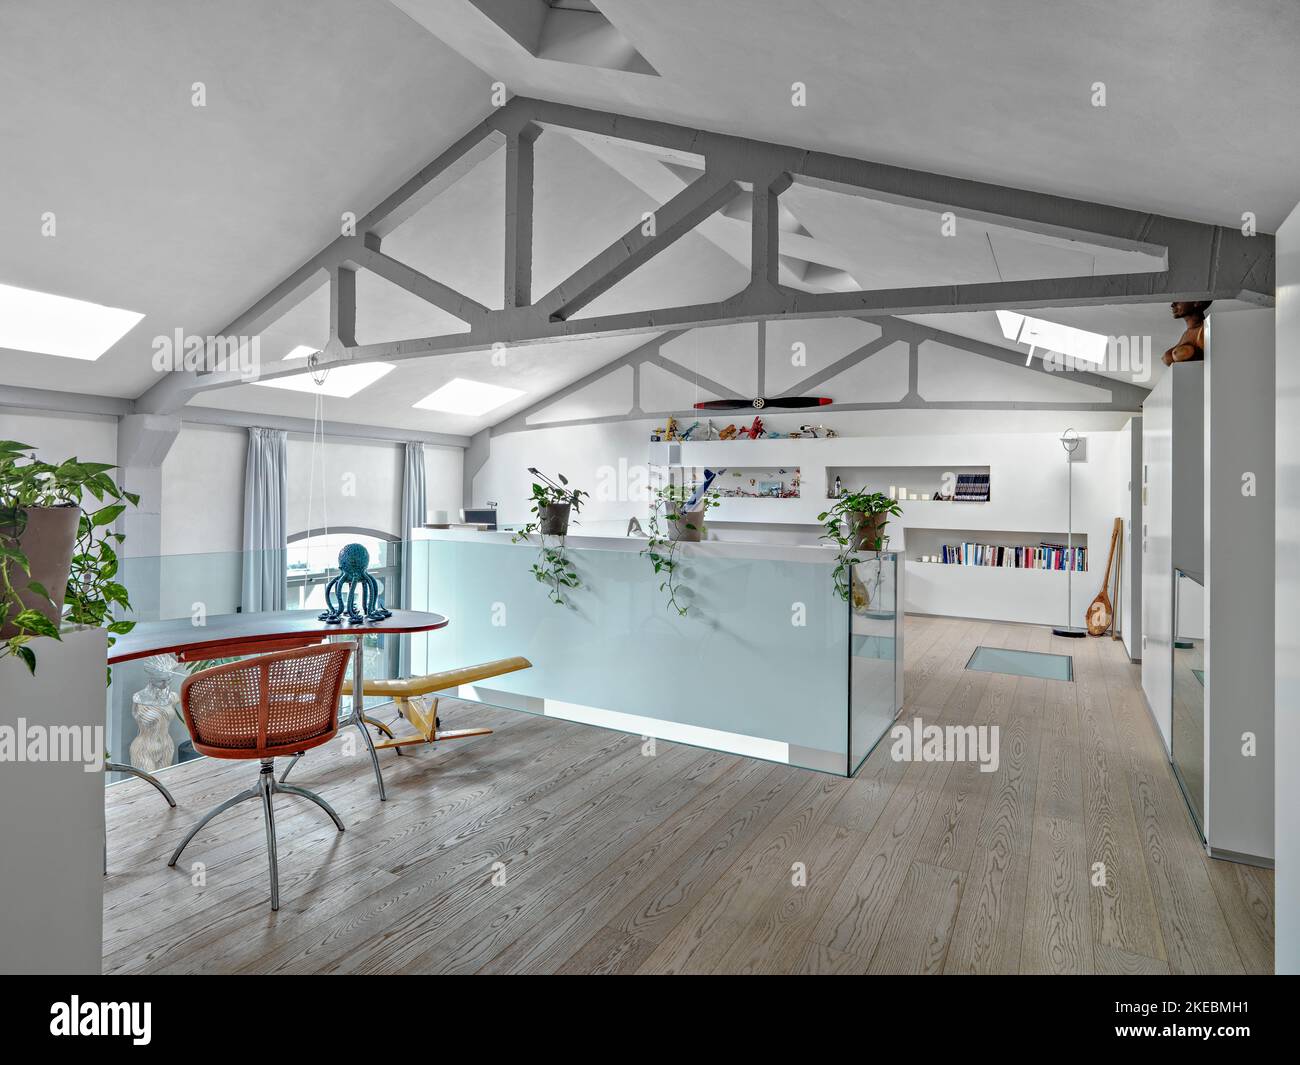 immagini interne di un moderno soggiorno nella camera mansardata in primo piano la scrivania con pavimento in legno Foto Stock